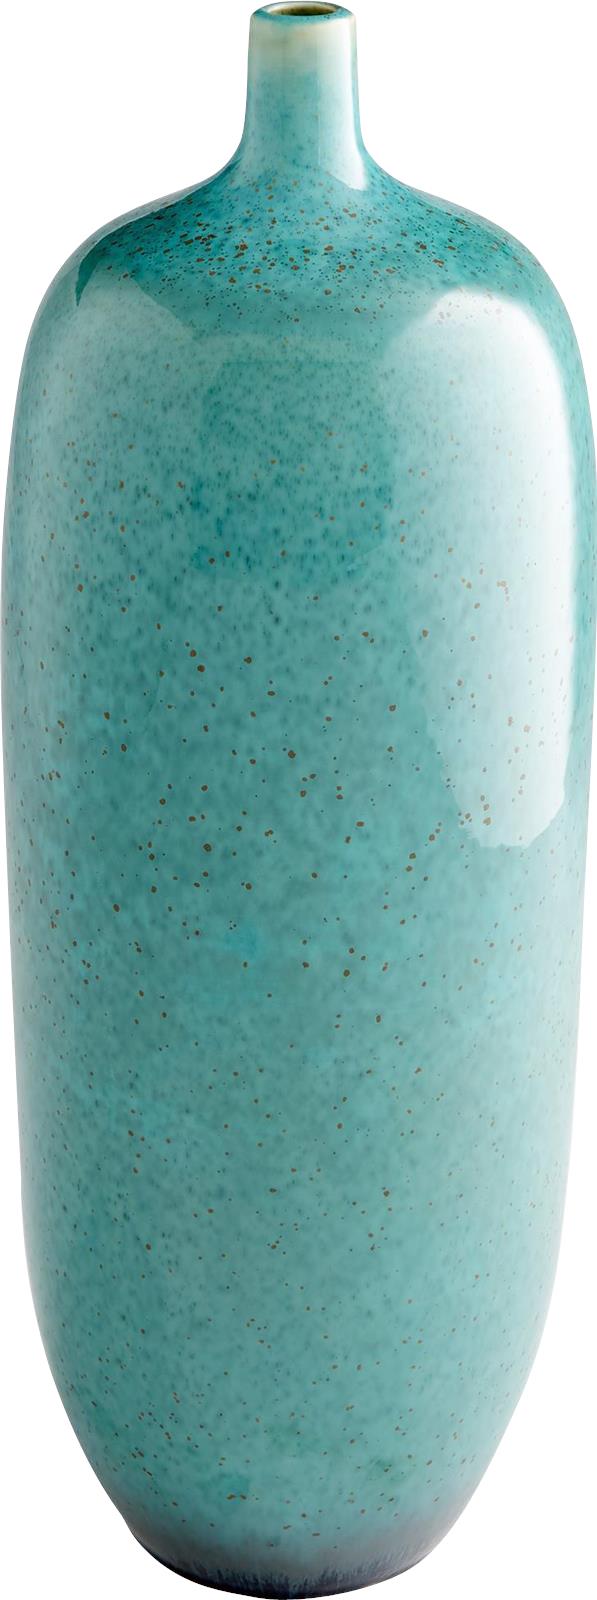 Vase CYAN DESIGN Turquoise Glaze Ceramic-Image 2